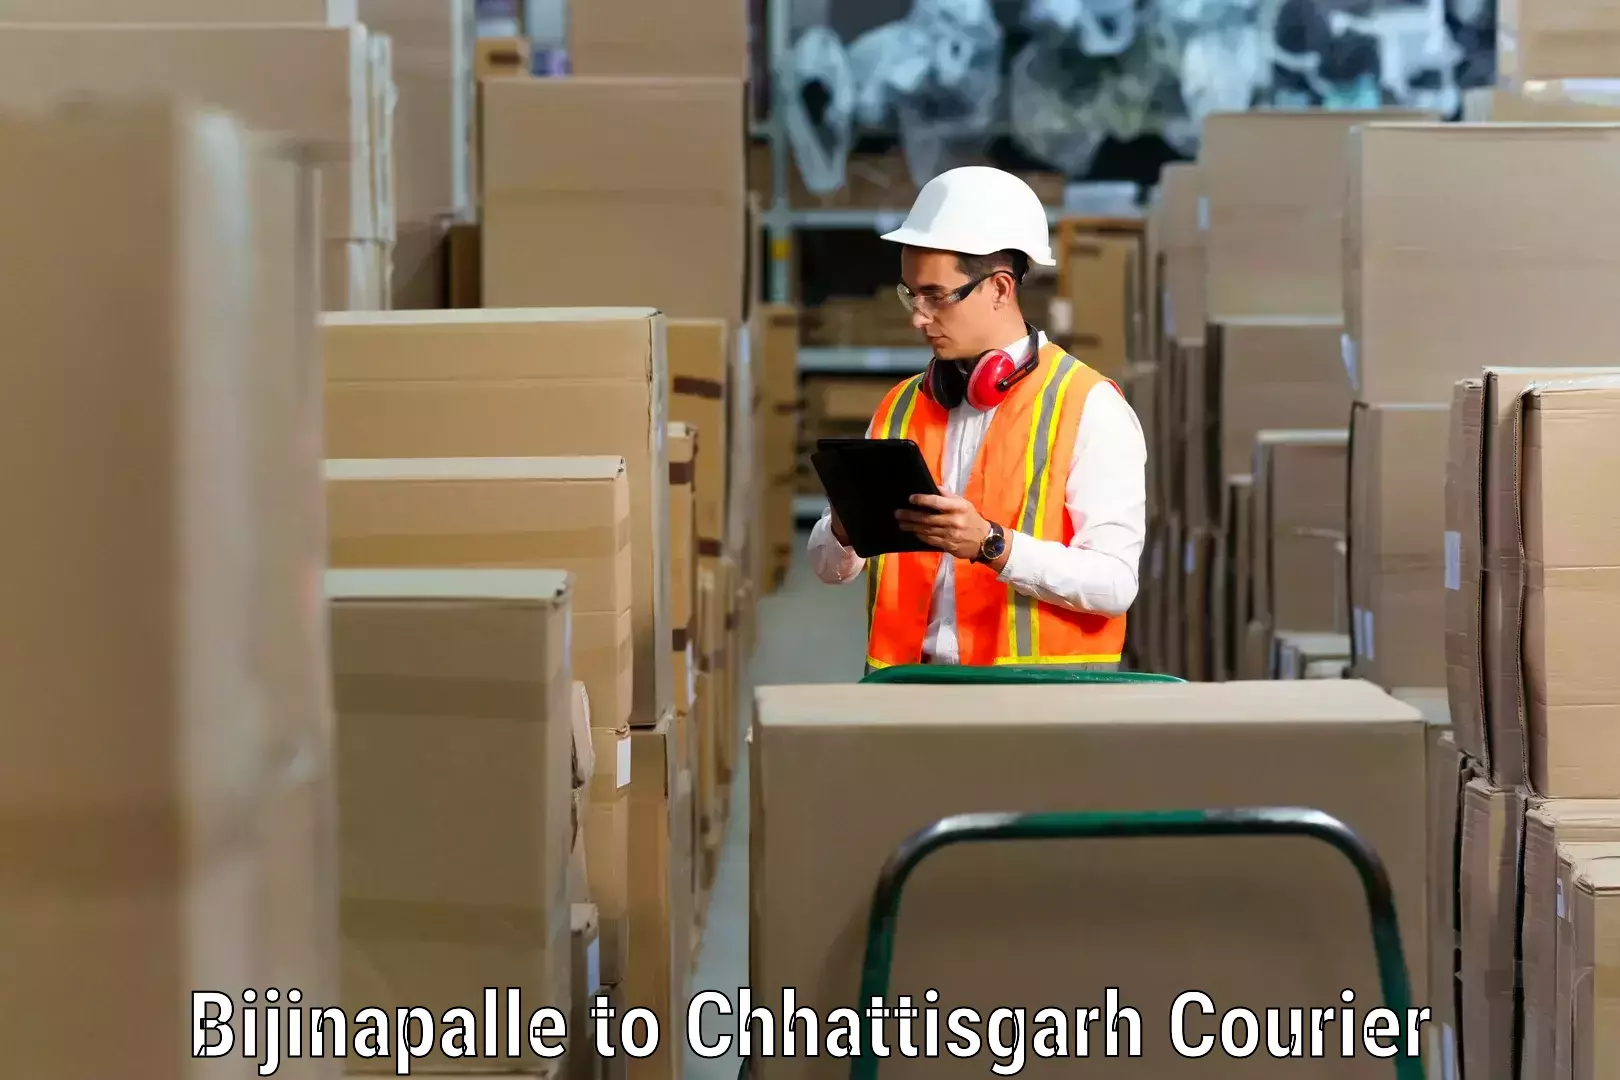 Furniture transport and storage Bijinapalle to Pakhanjur